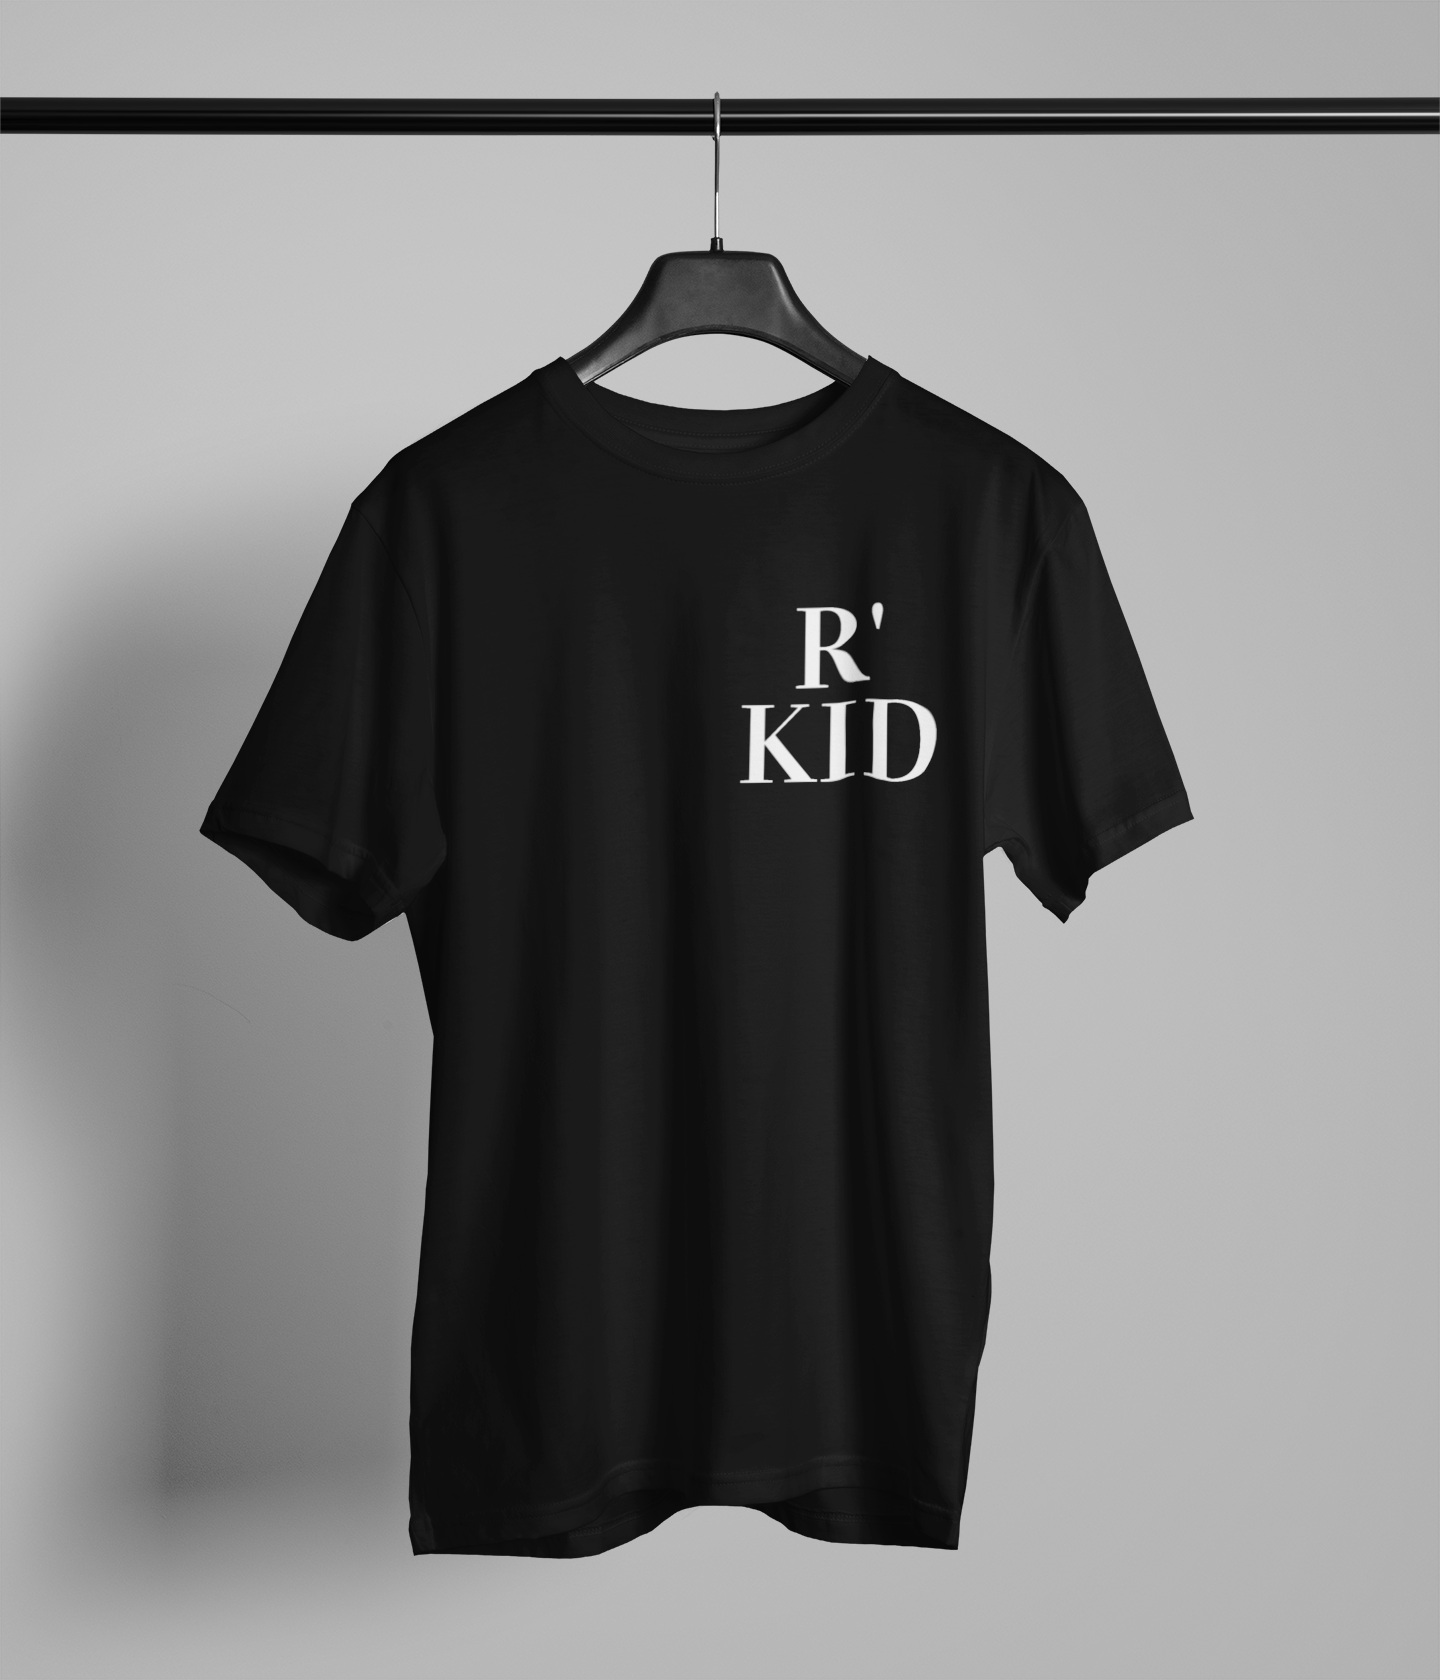 R'KID Northern Slang Small Logo T-Shirt